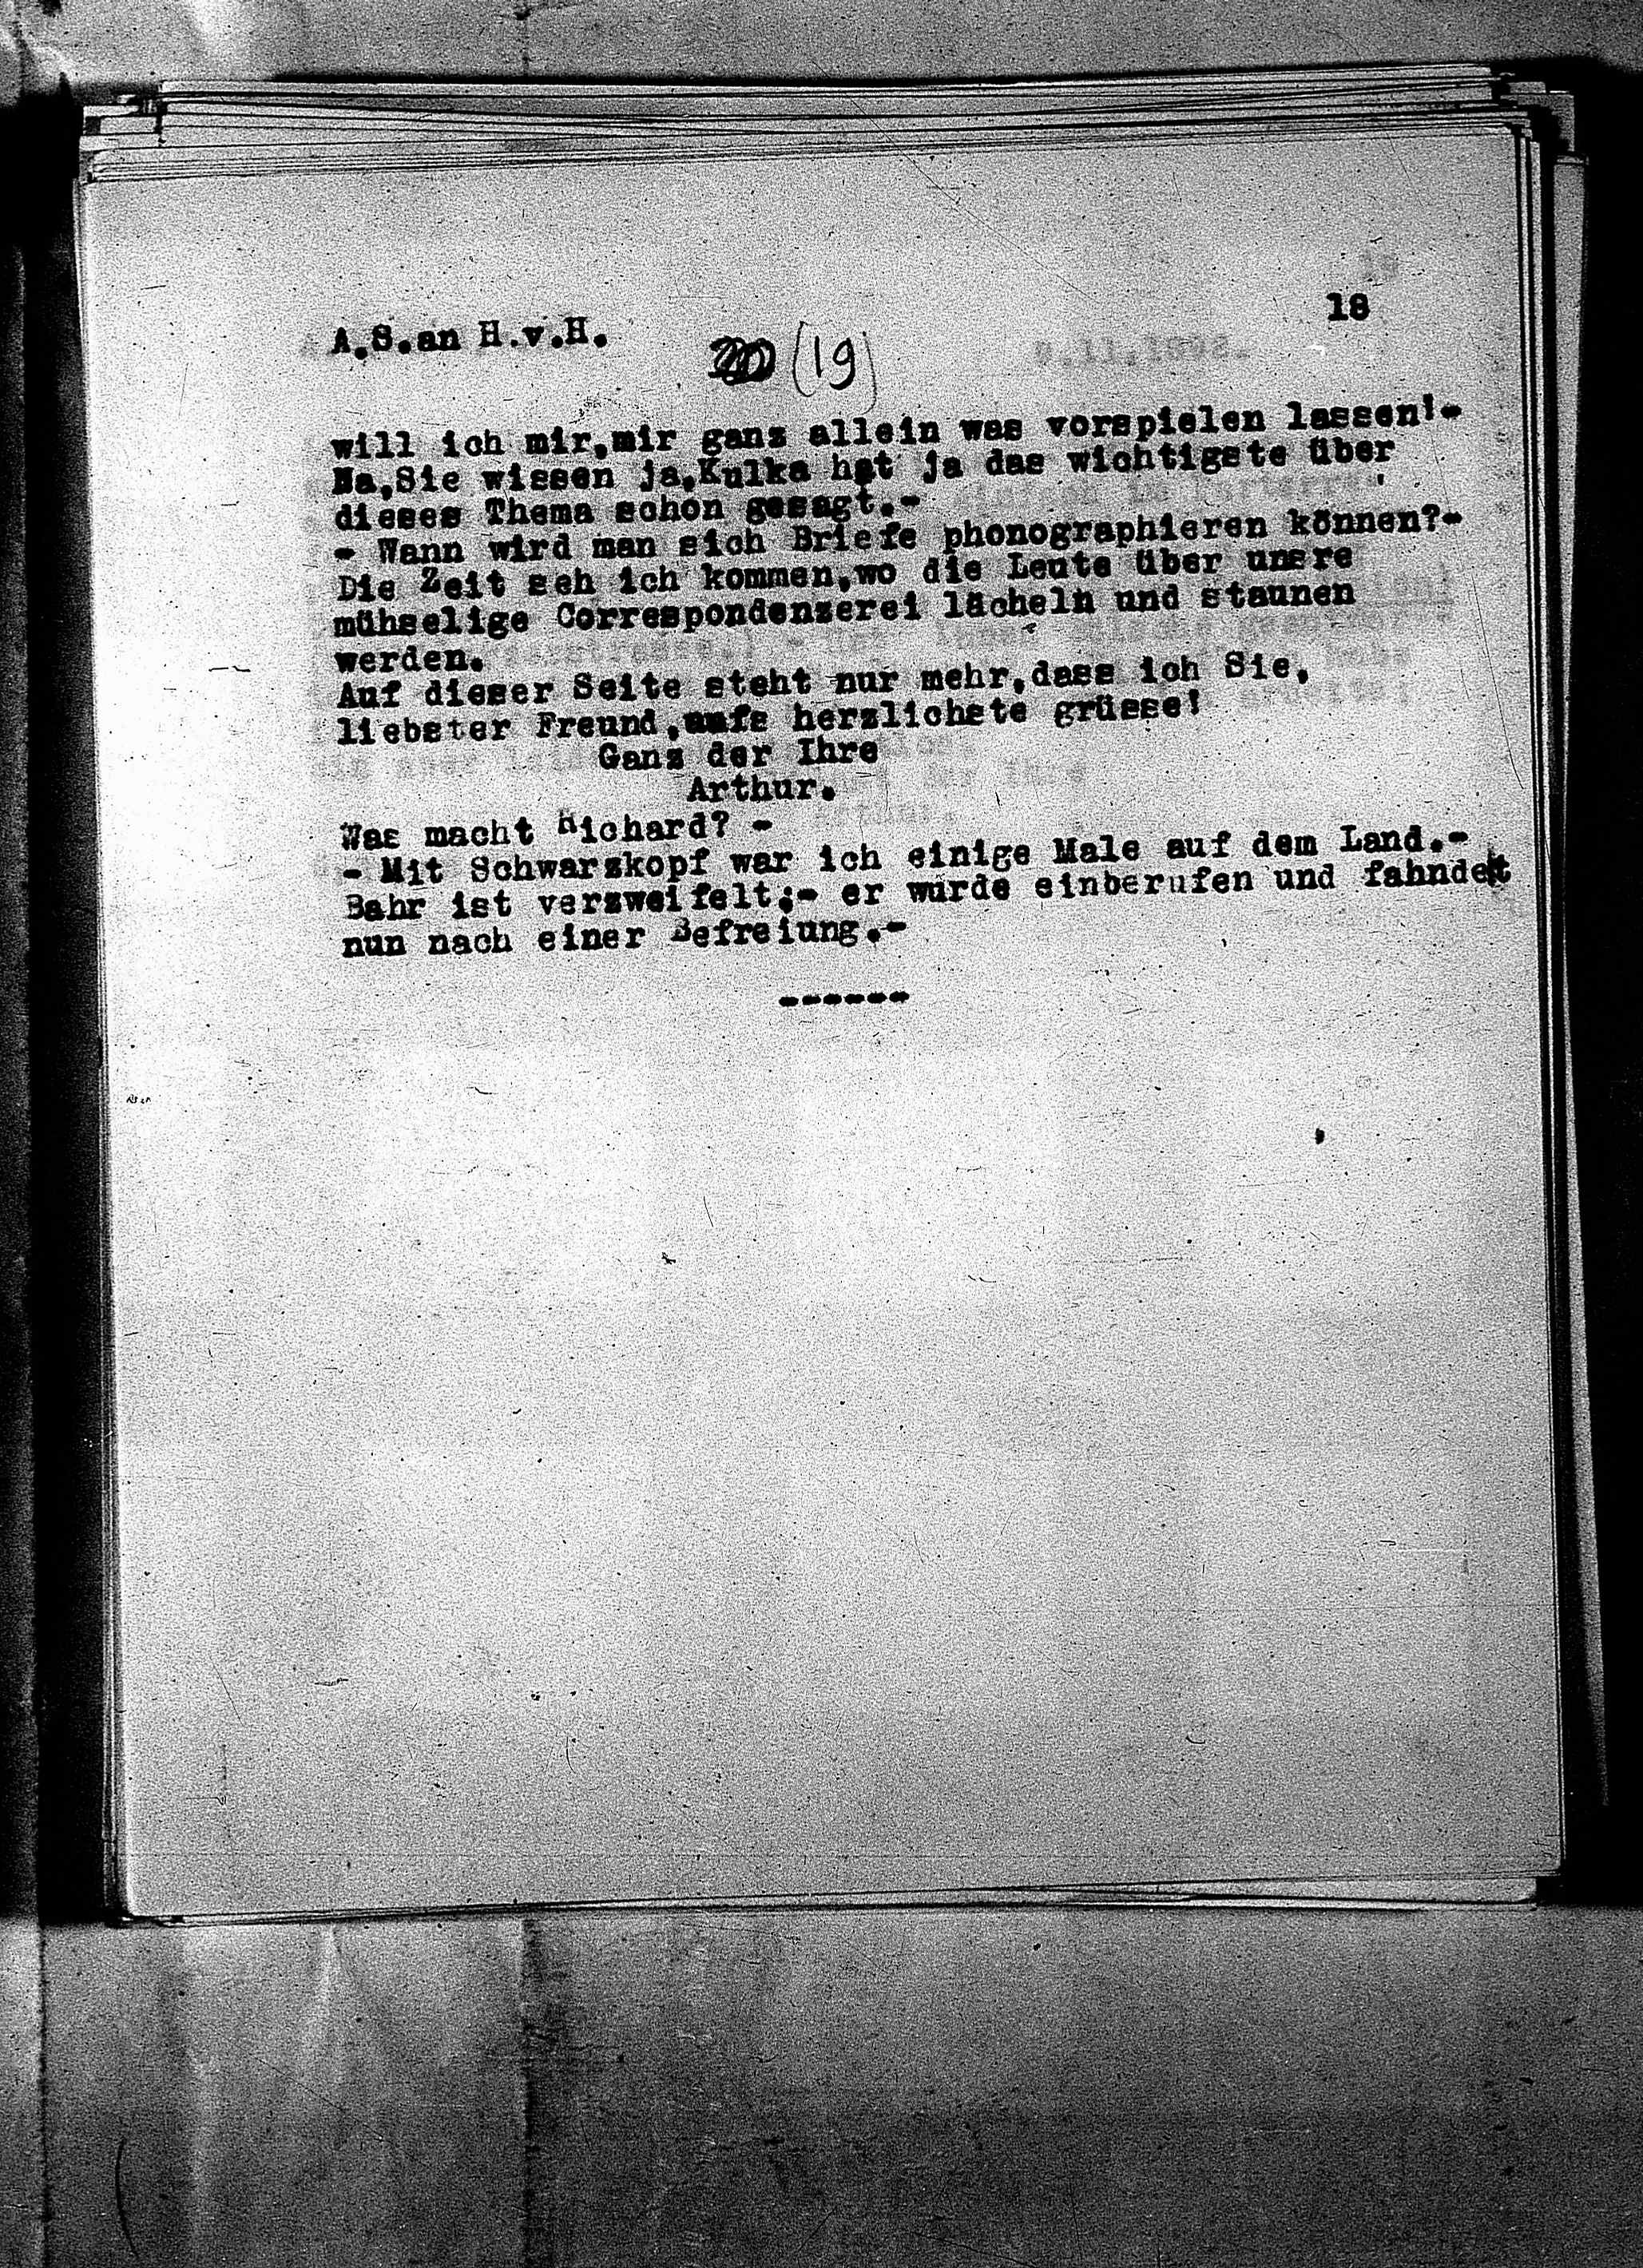 Vorschaubild für Hofmannsthal, Hugo von_AS an HvH Abschrift, HvH an AS, Originale (Mikrofilm 38), Seite 21